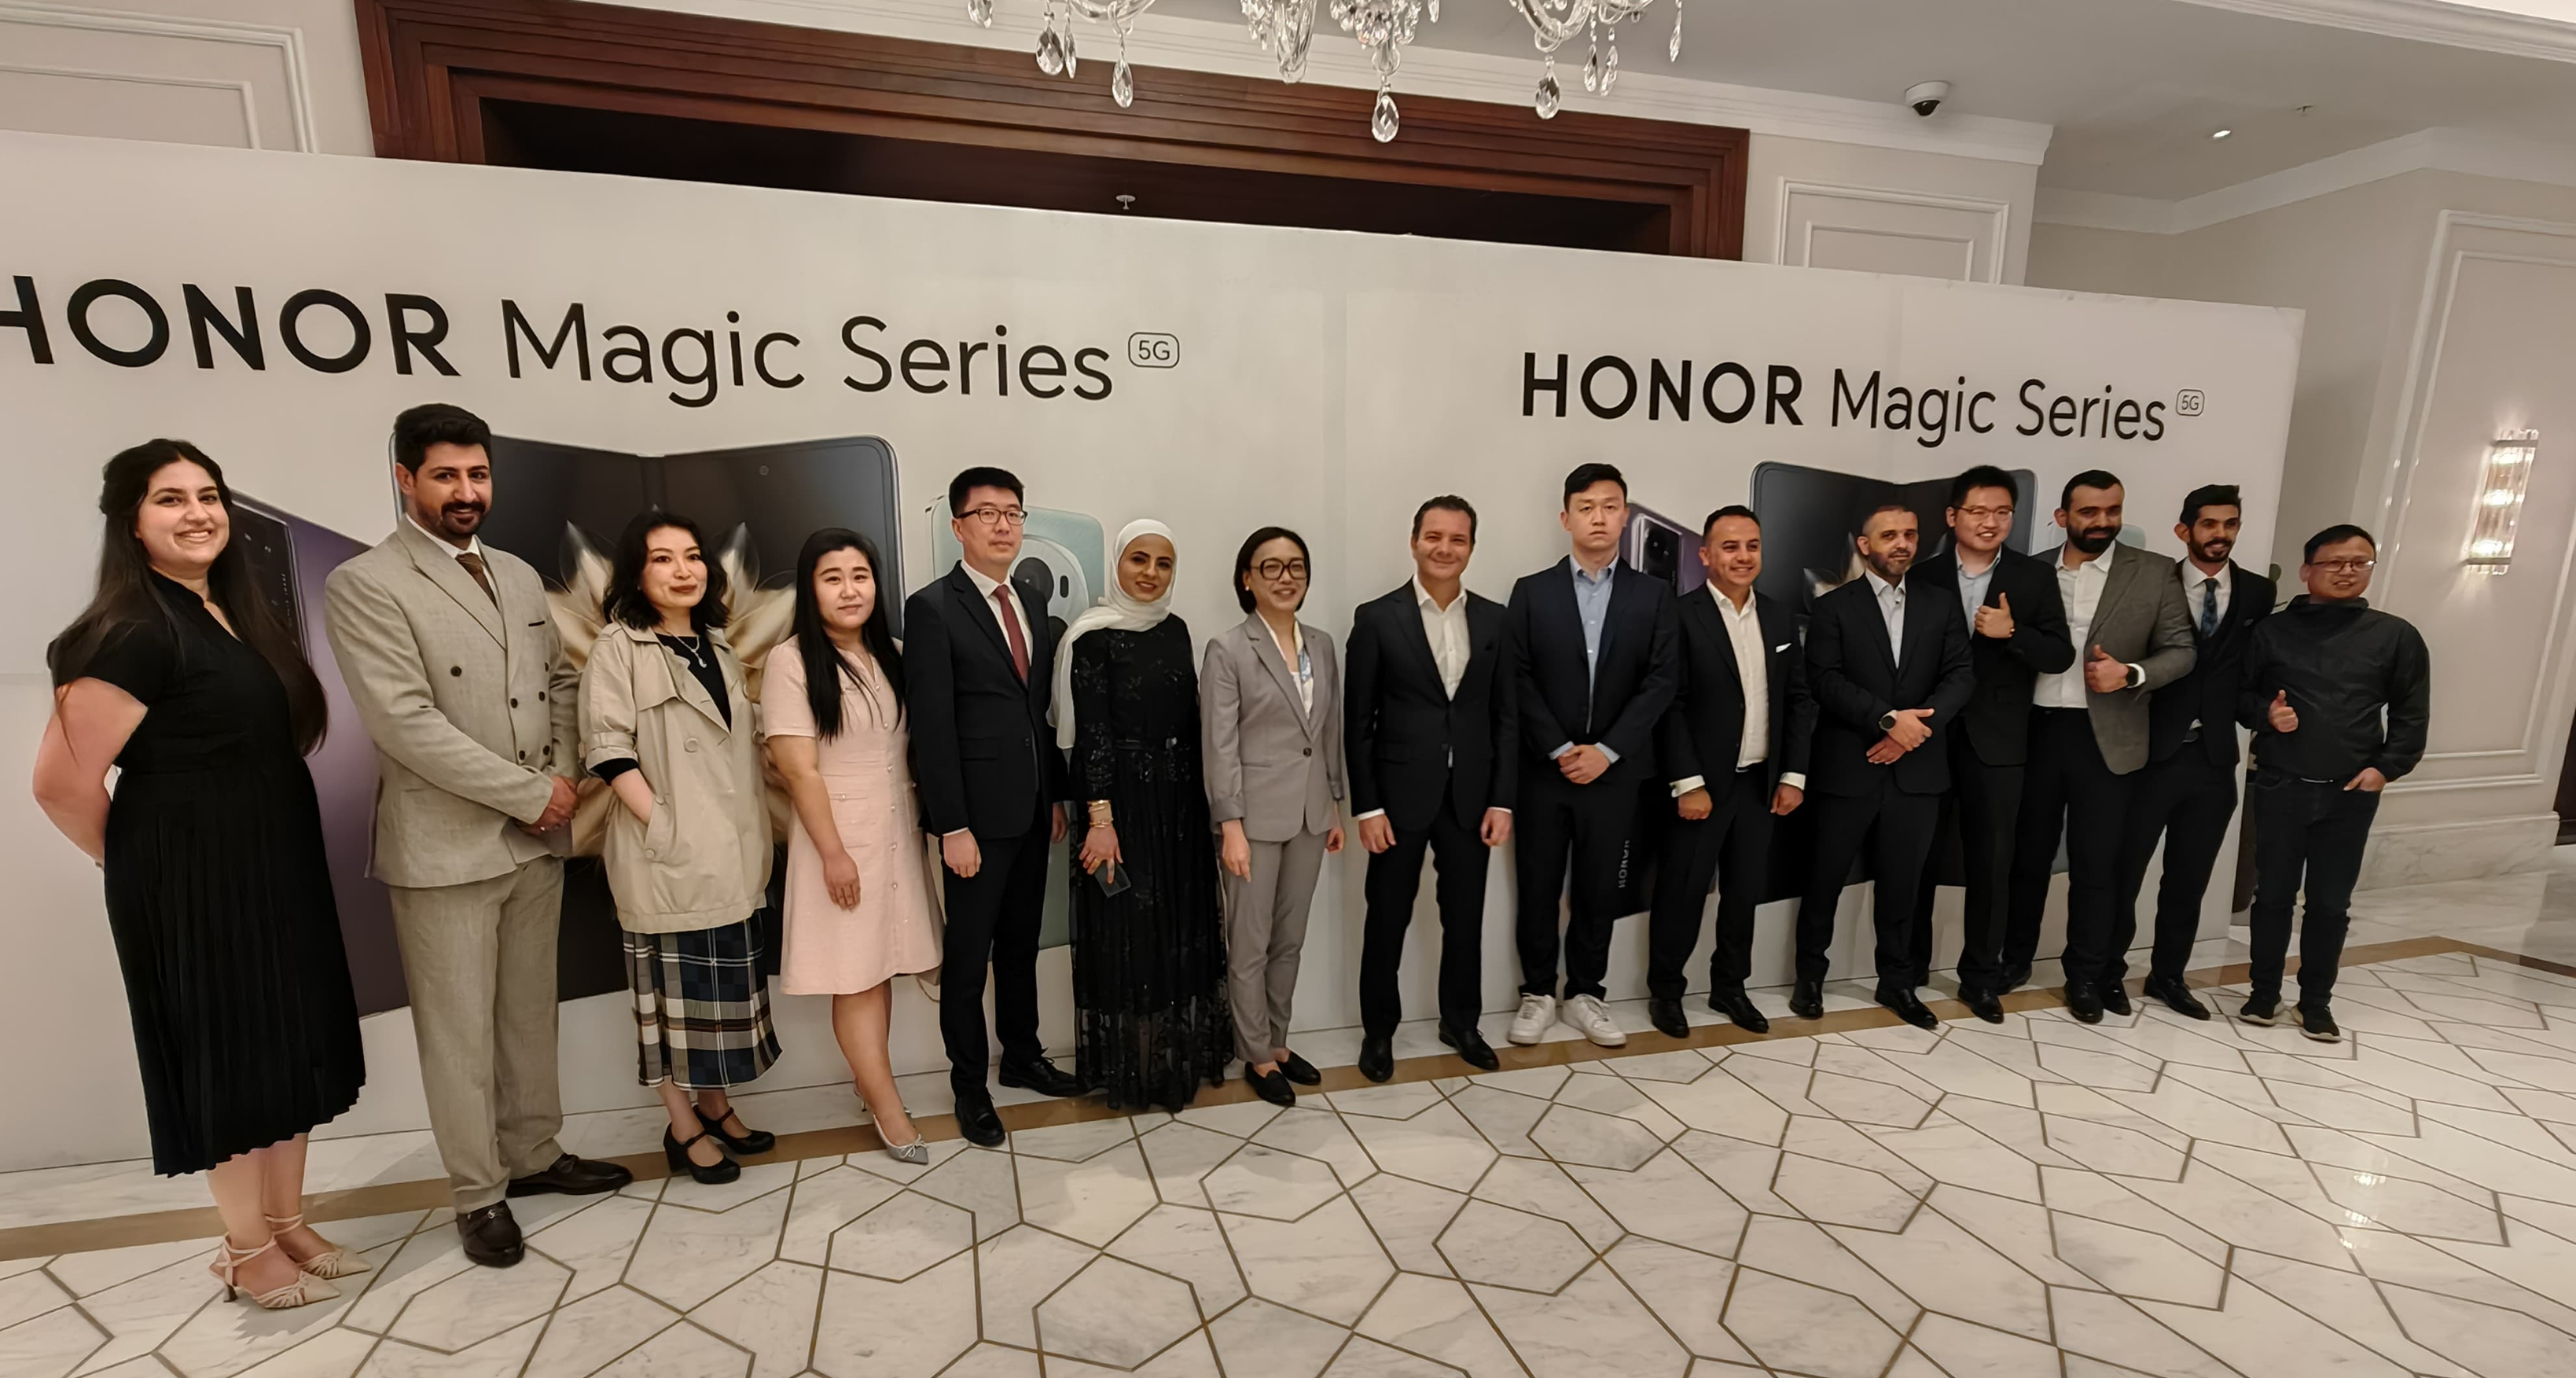 علامة HONOR تعلن عن إطلاق HONOR Magic6 Pro و HONOR Magic V2 من سلسلتها الرائدة في الأردن